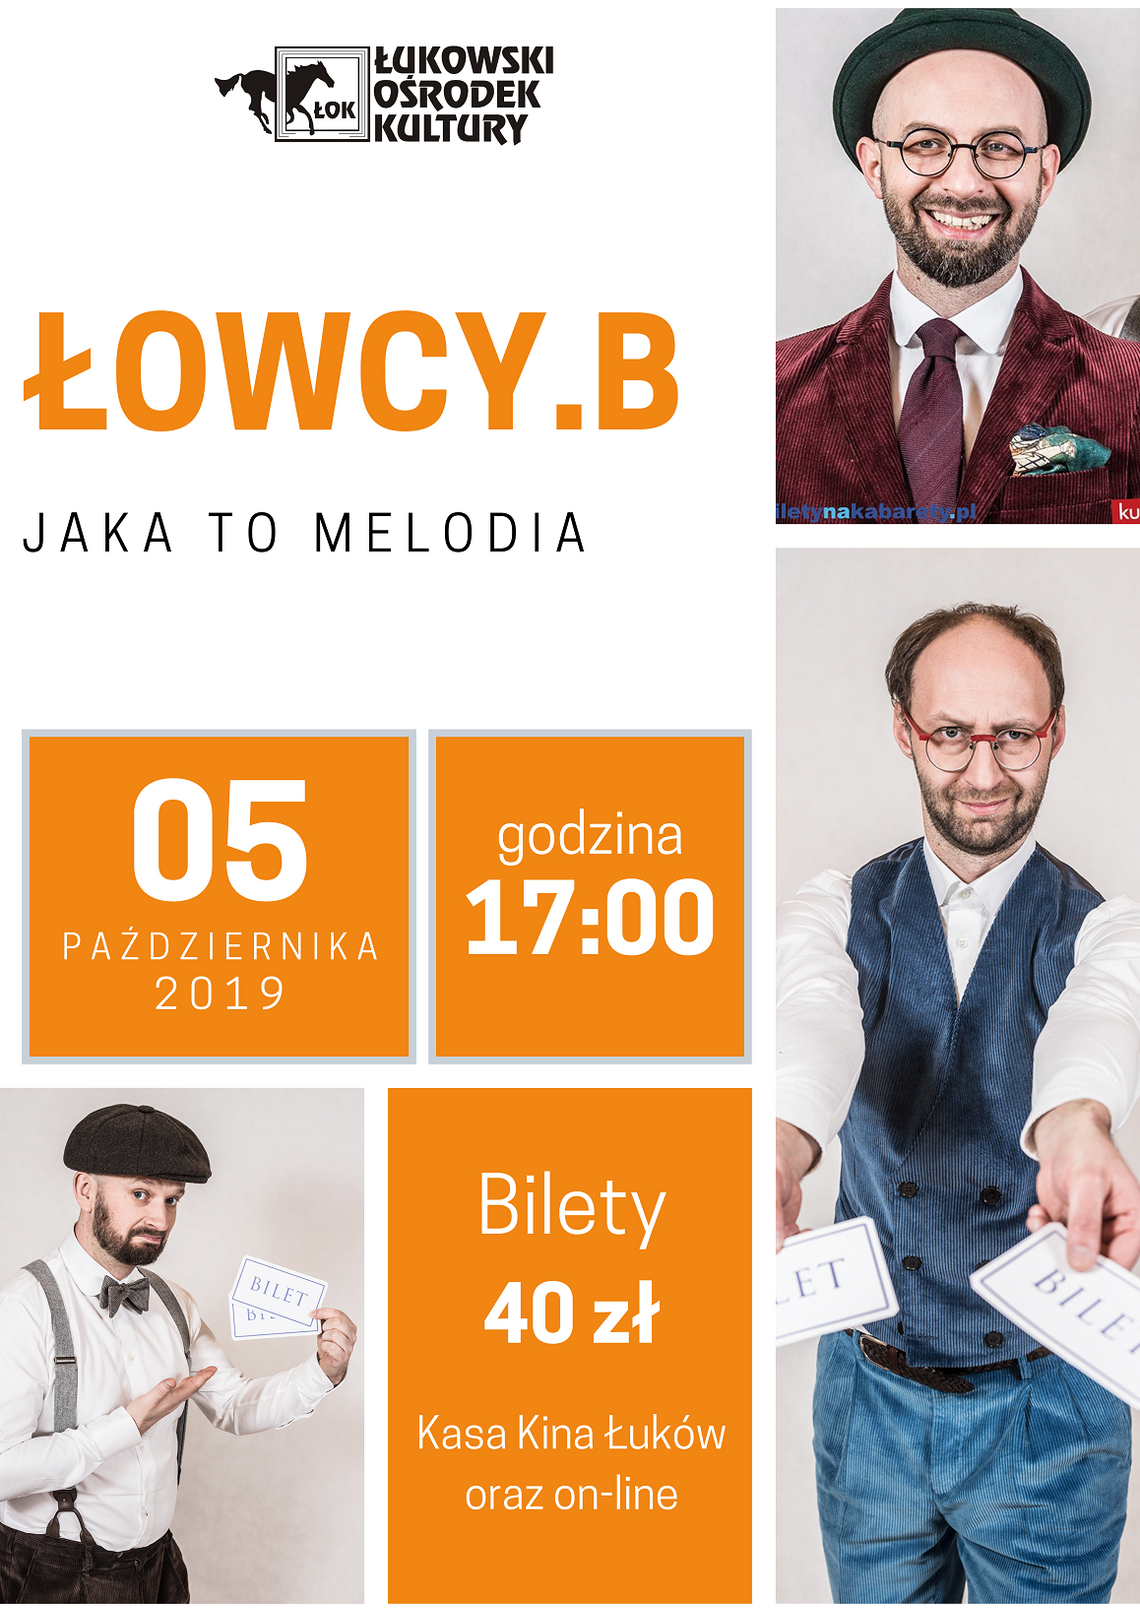 Kabaret Łowcy.B w ŁOK /5 października 2019